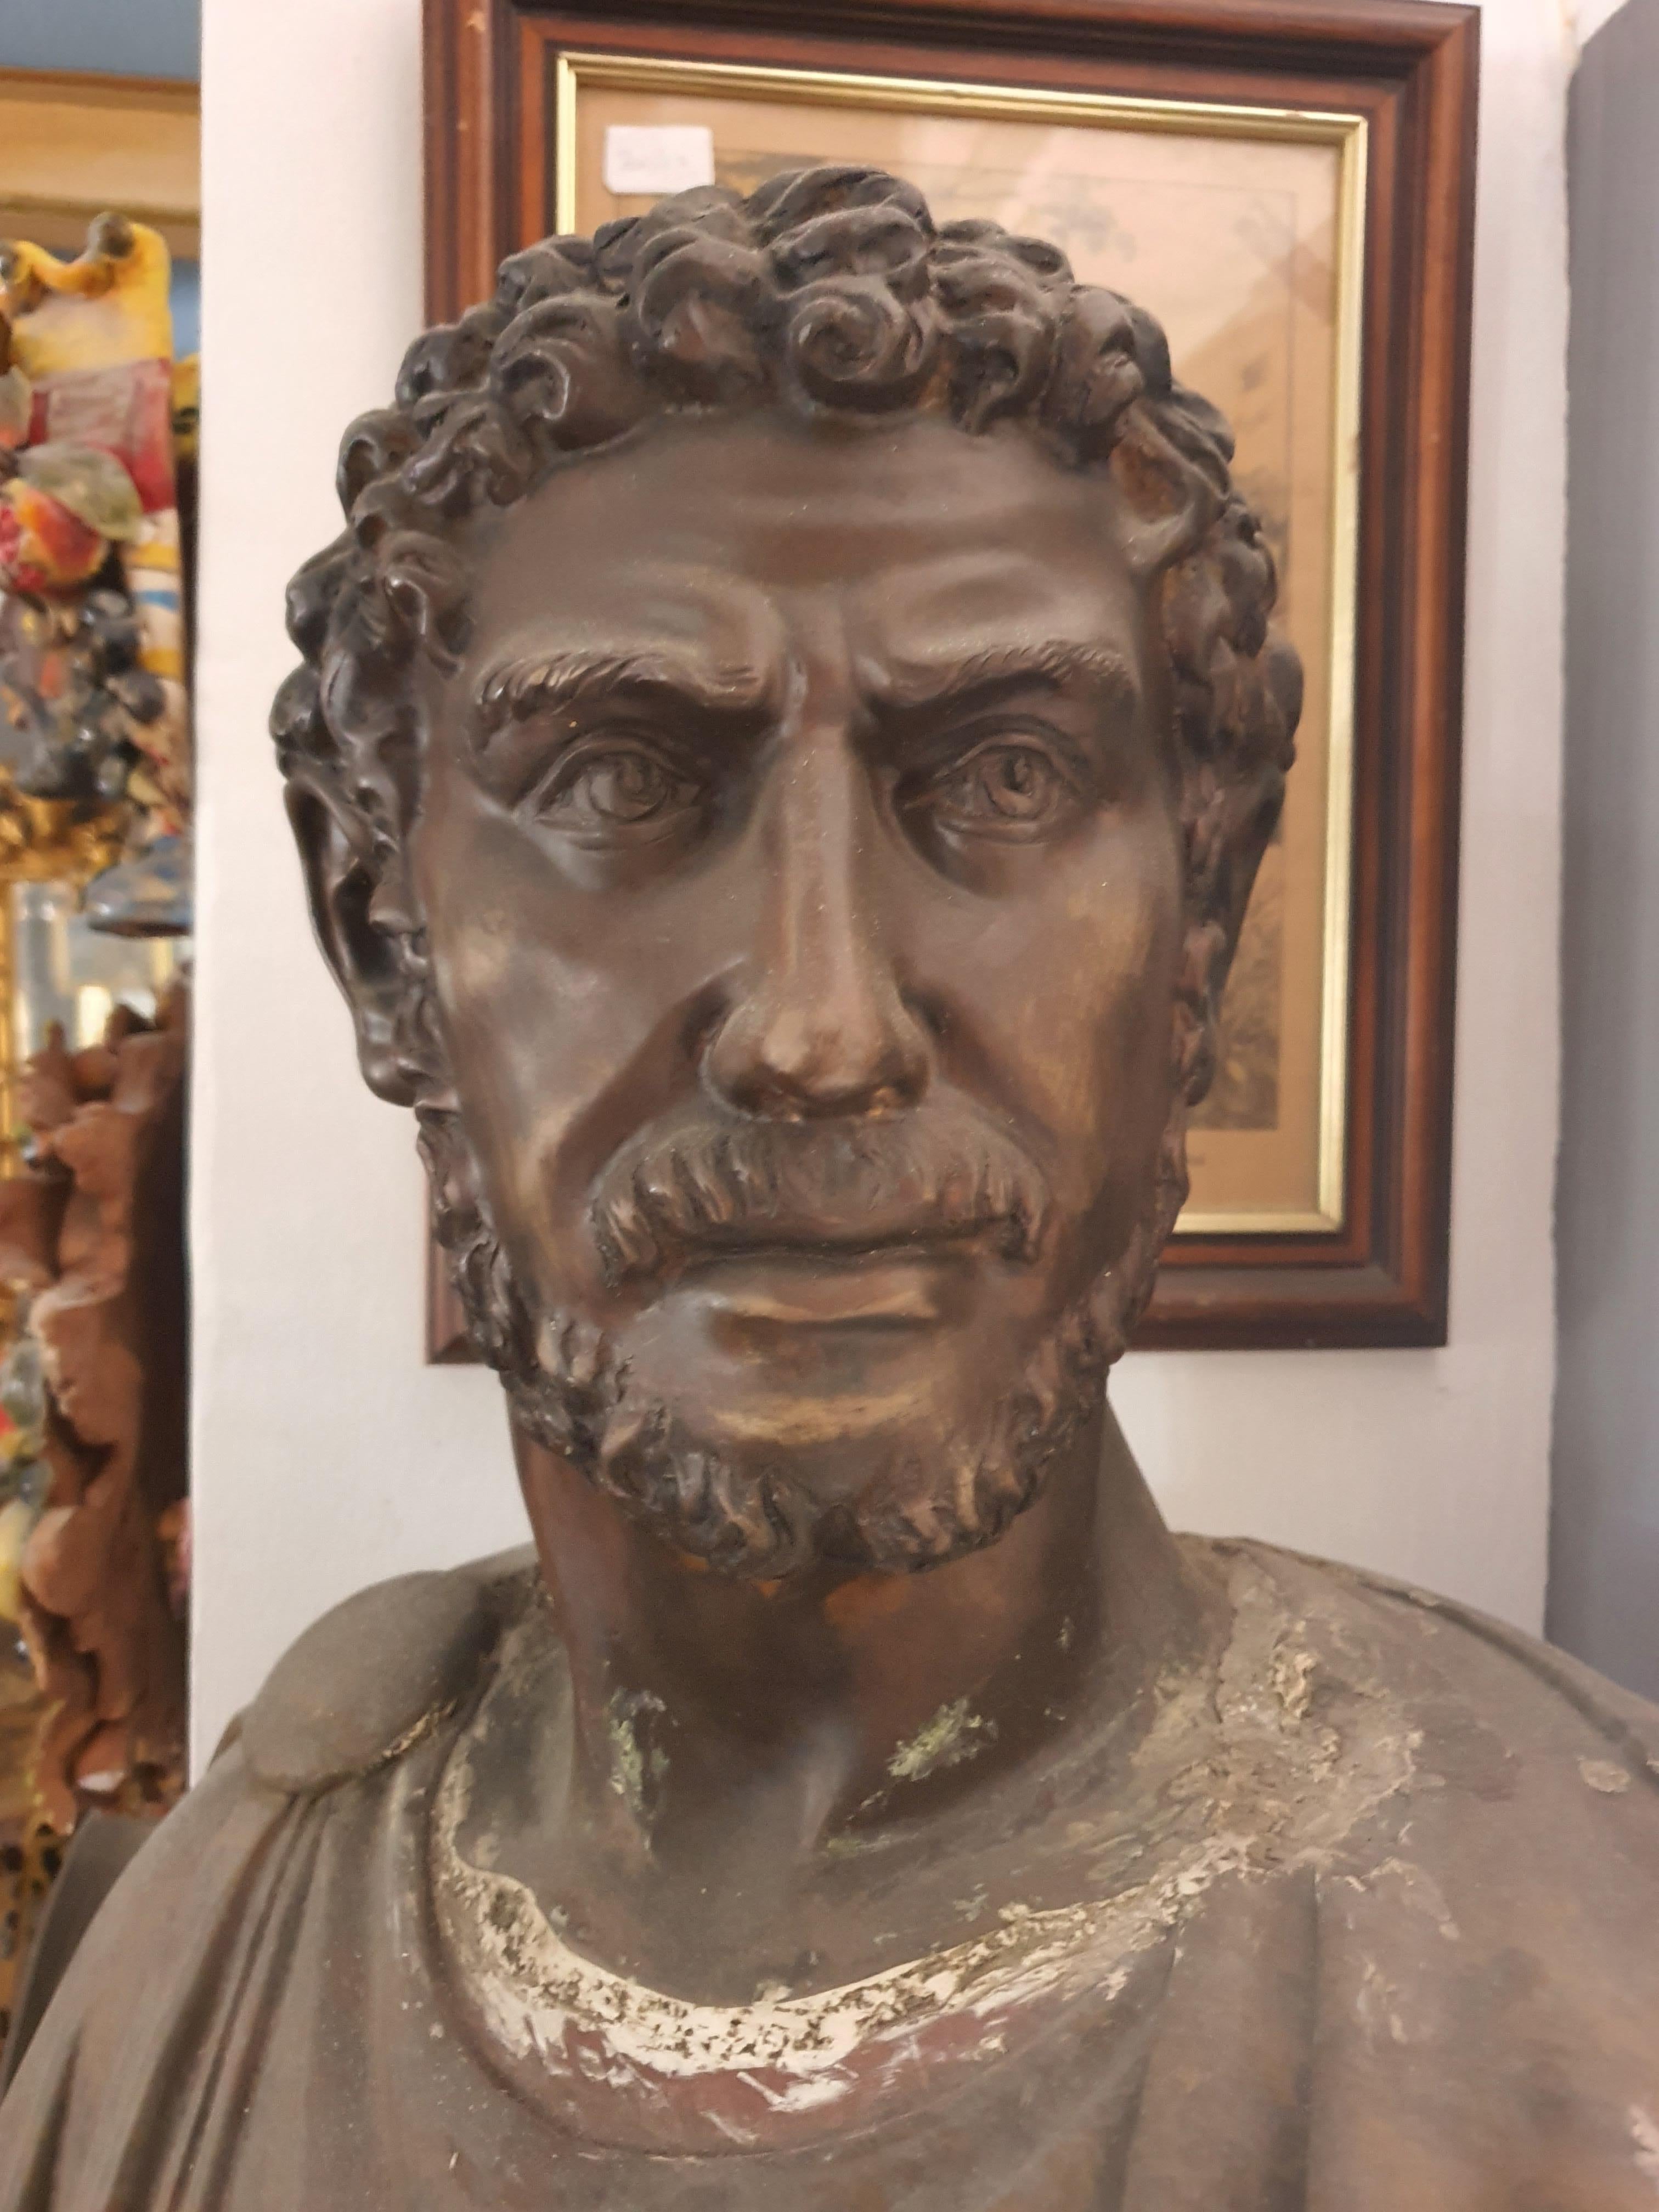 Élégant buste en marbre et en bronze, représentant une figure romaine. Ciselage particulier de la tête en bronze. Finement sculpté dans les moindres détails.